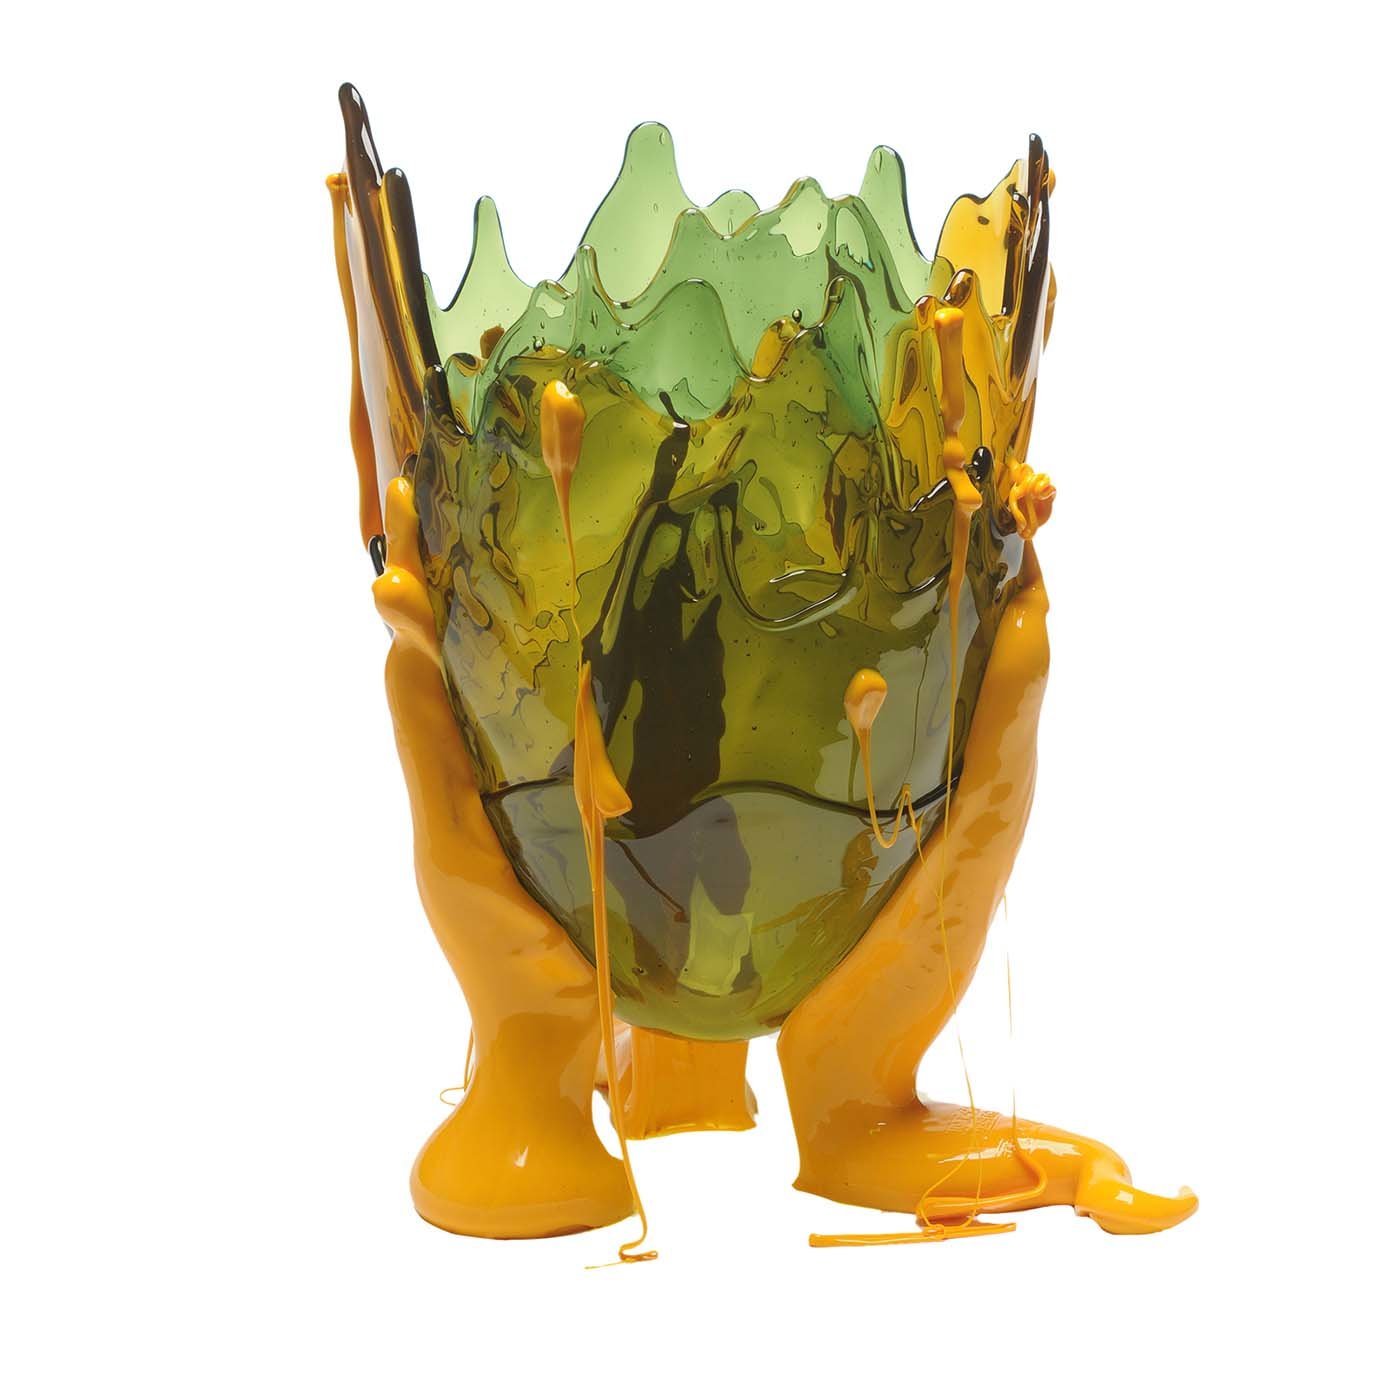 Grand vase spécial jaune et vert clair de Gaetano Pesce - Vue principale